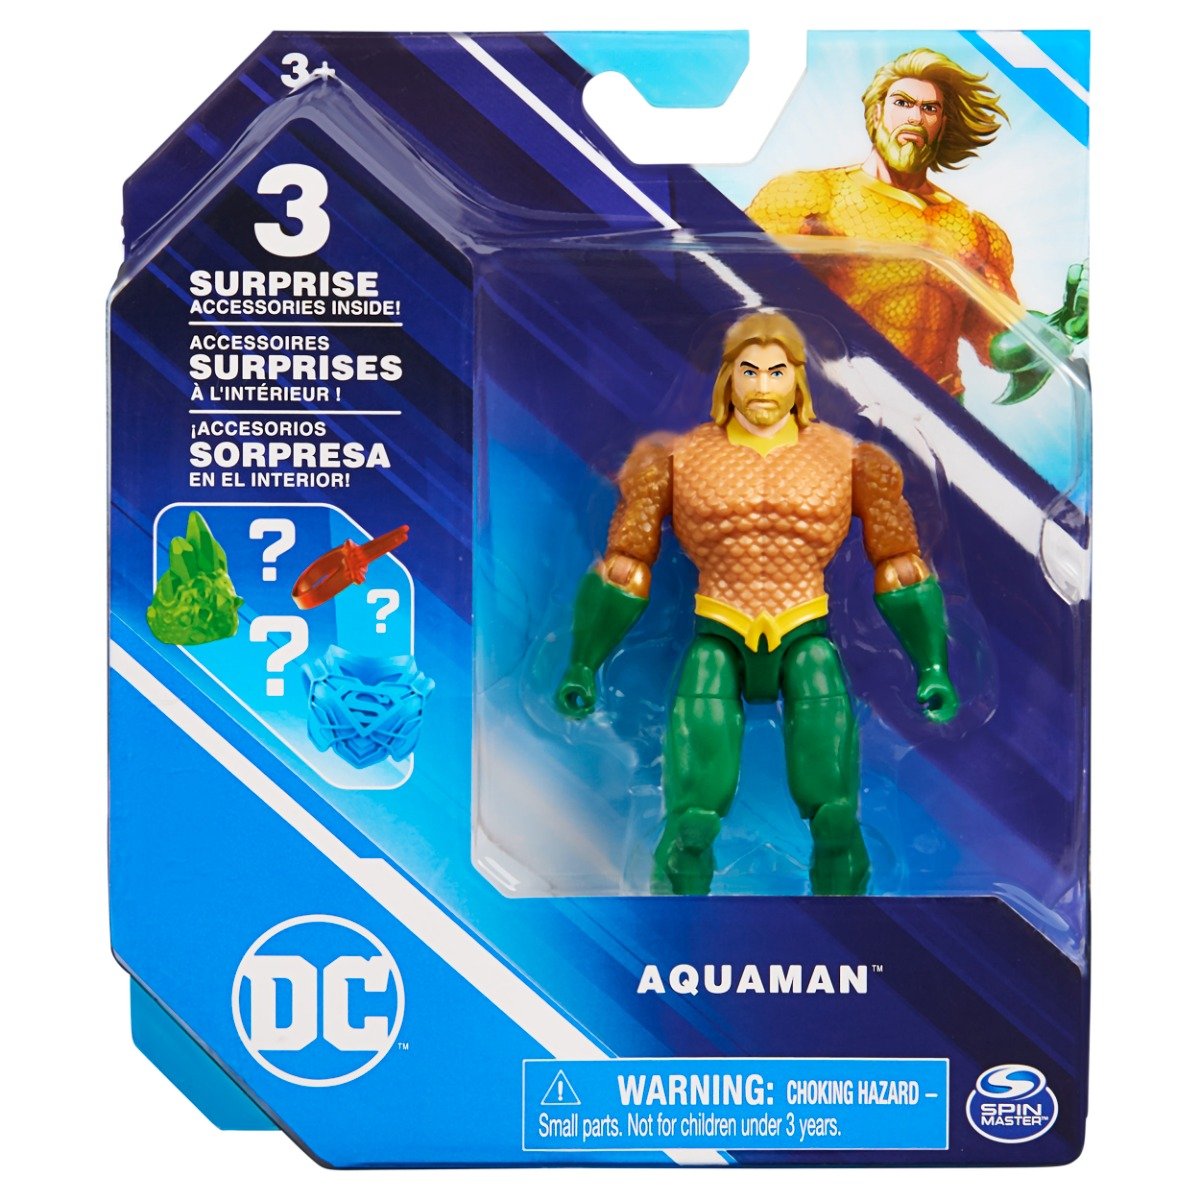 Figurina cu 2 accesorii surpriza, DC Universe, Aquaman, 10 cm, 20137129